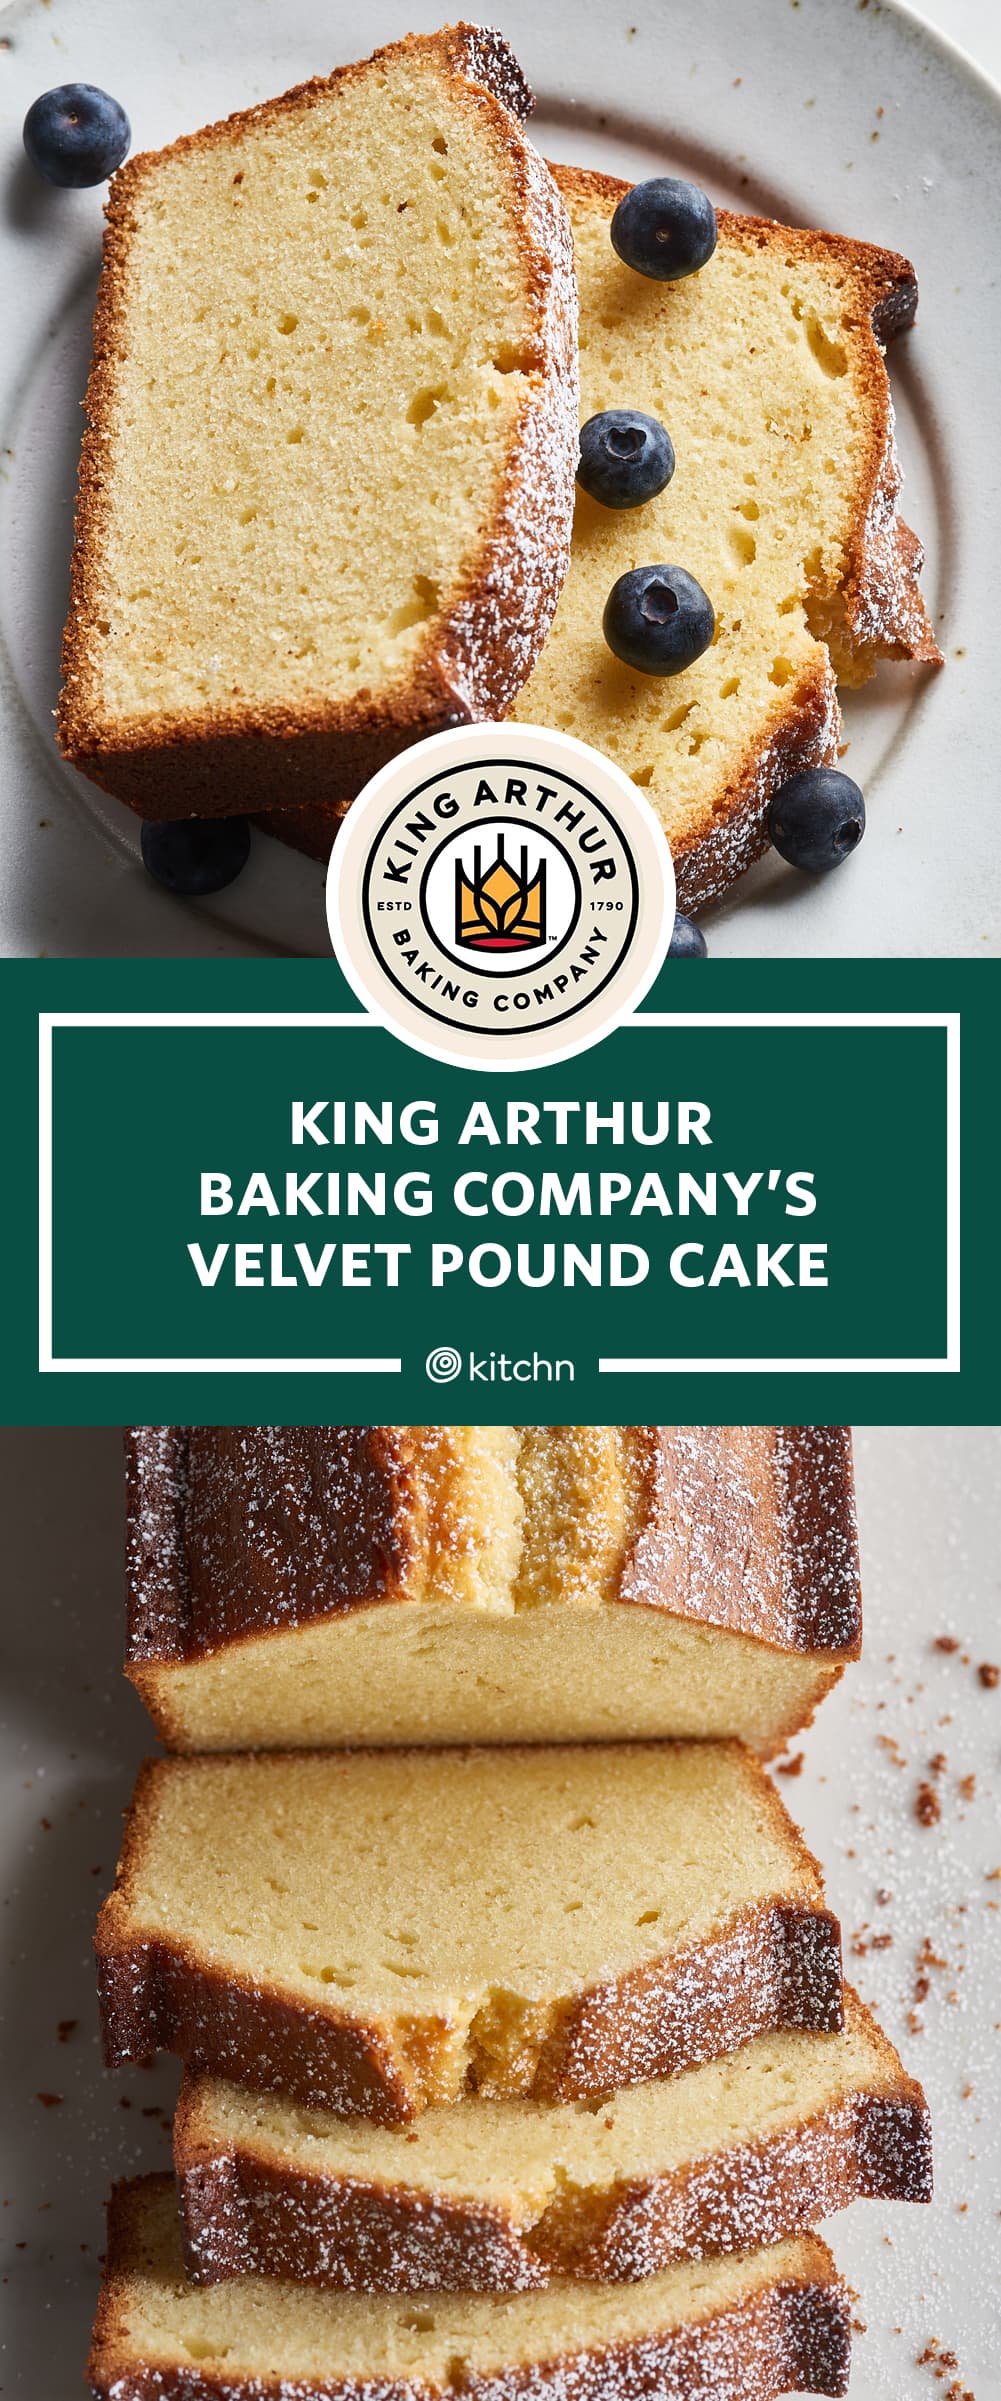 Bundt pan size  King Arthur Baking